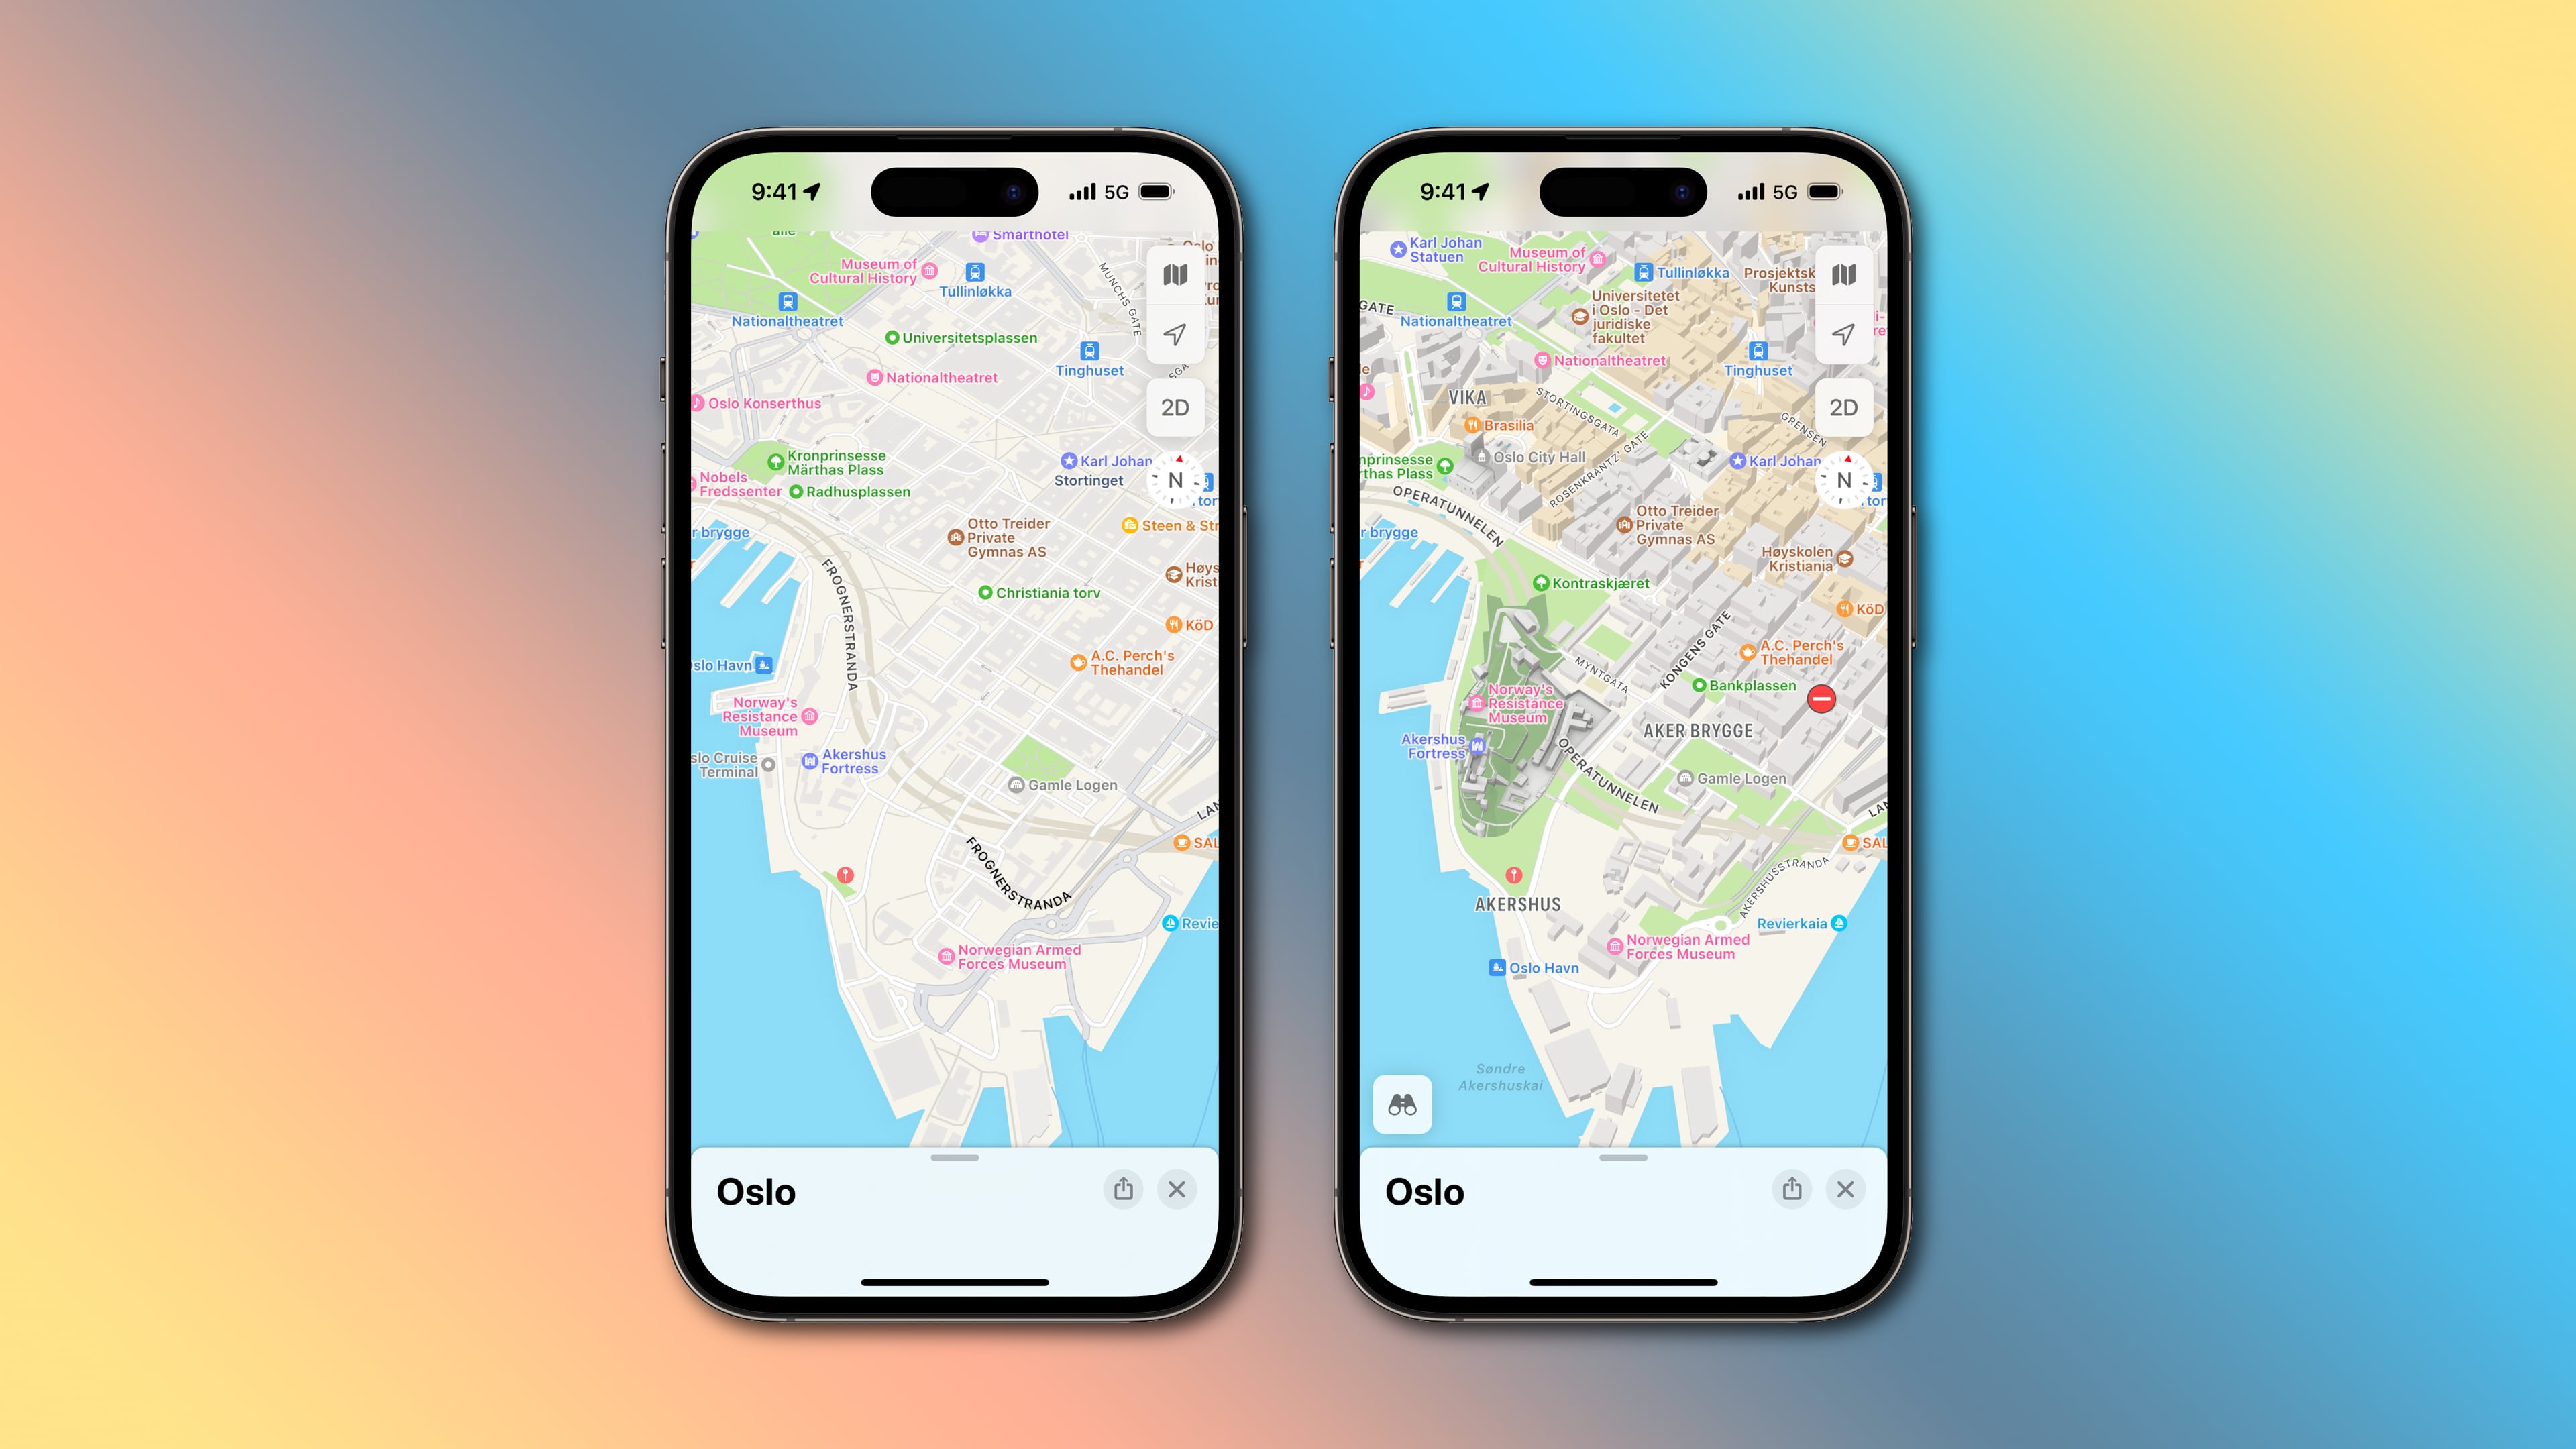 Apple Maps data in Oslo: old vs. new